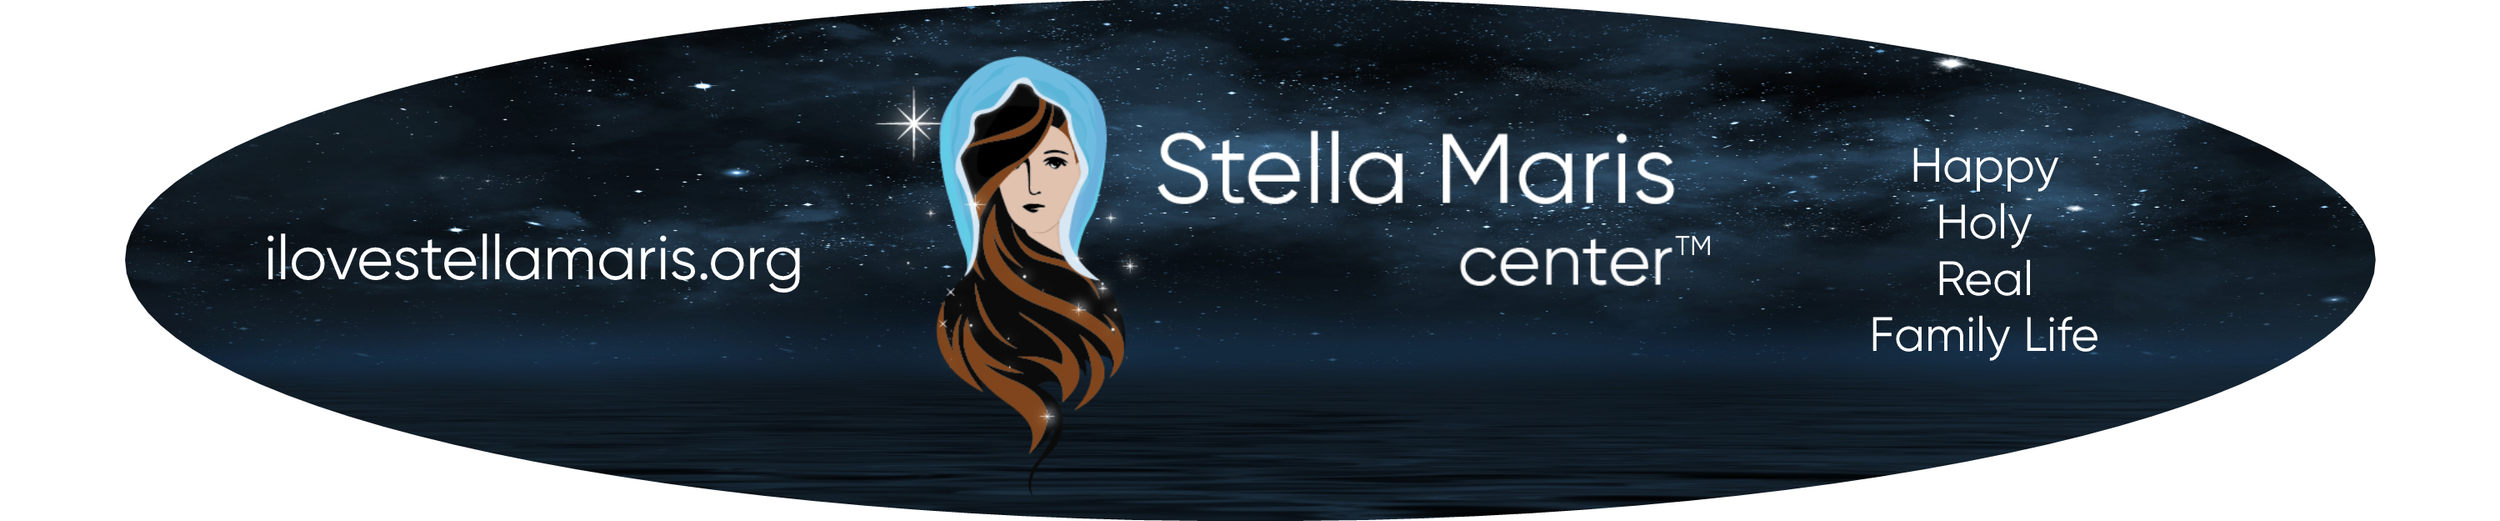 Stella Maris logo 1.png